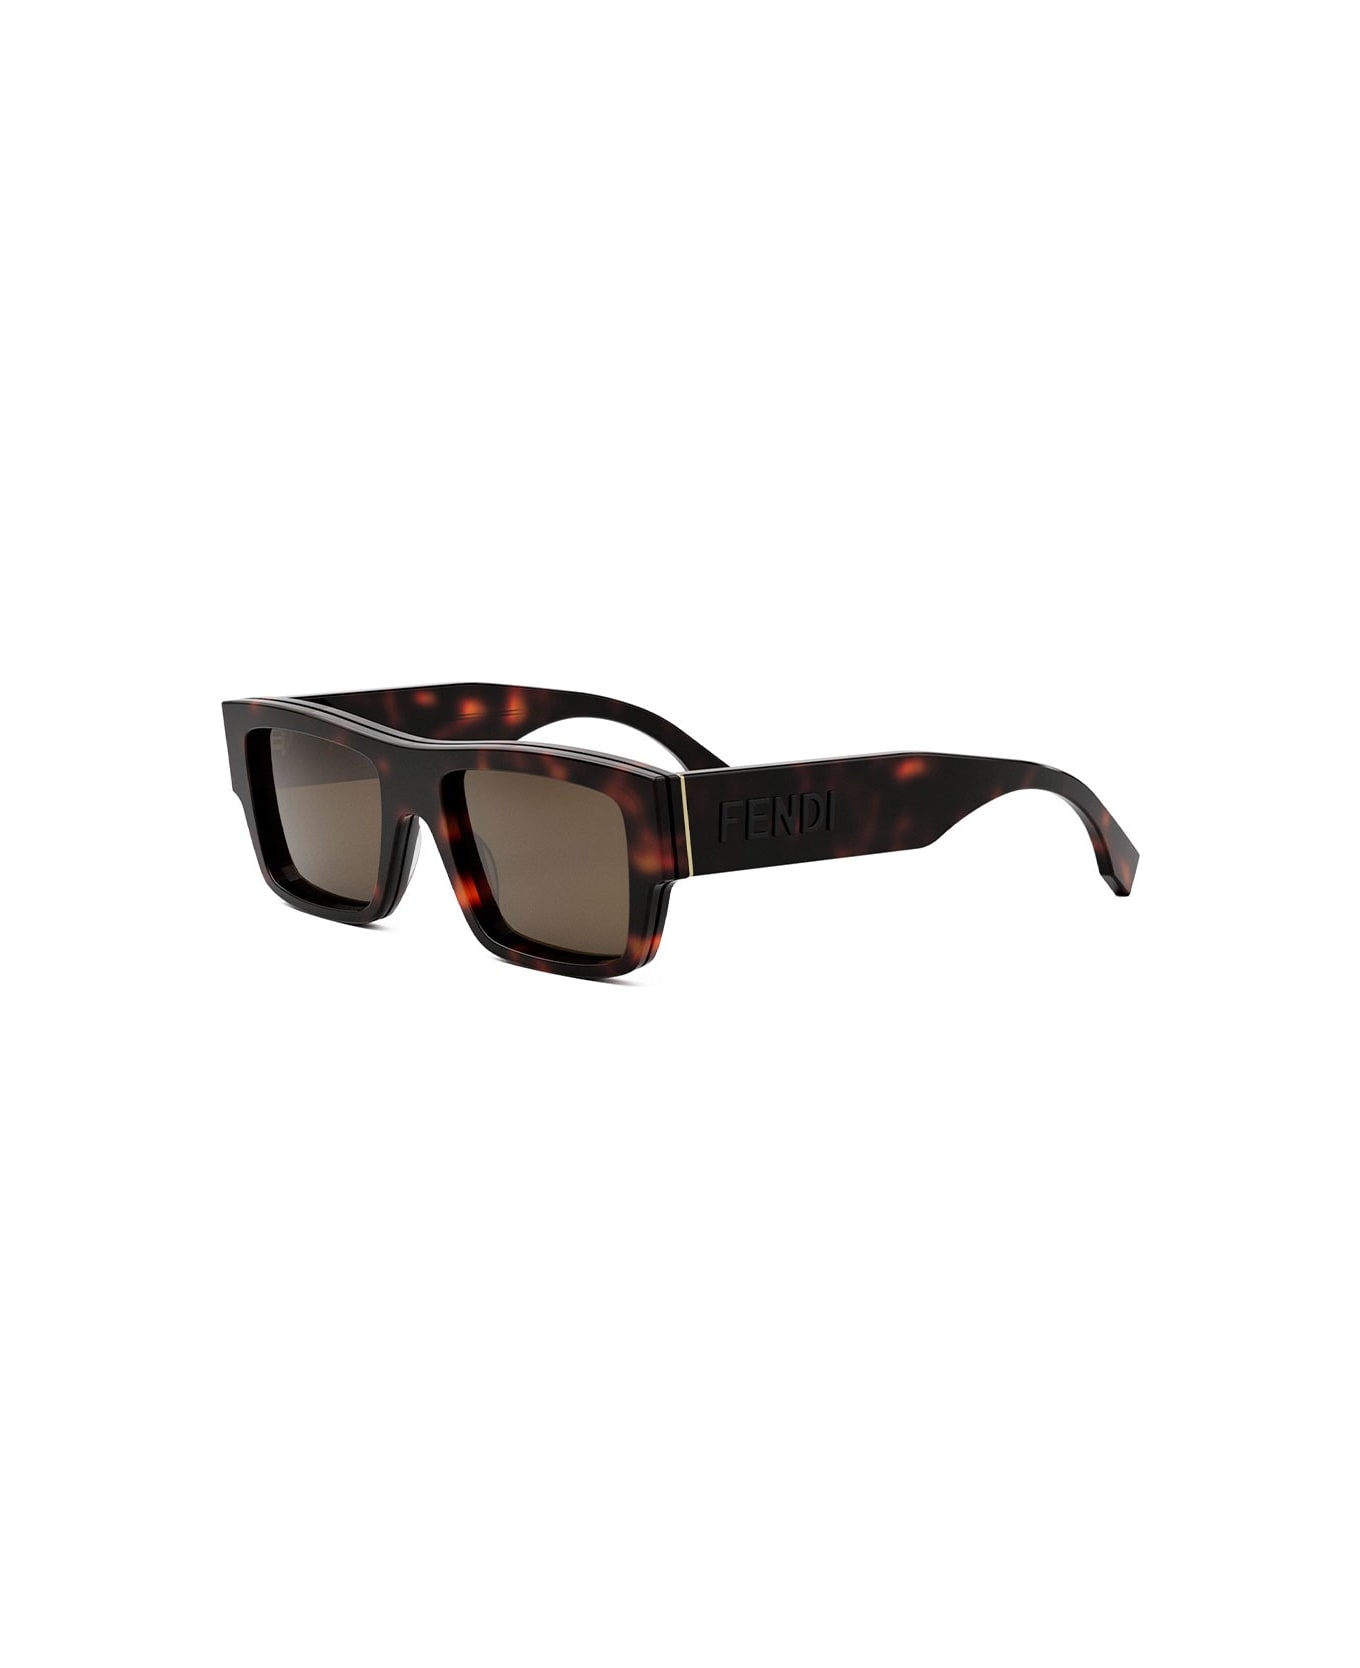 Fendi Eyewear Sunglasses - Havana/Marrone サングラス